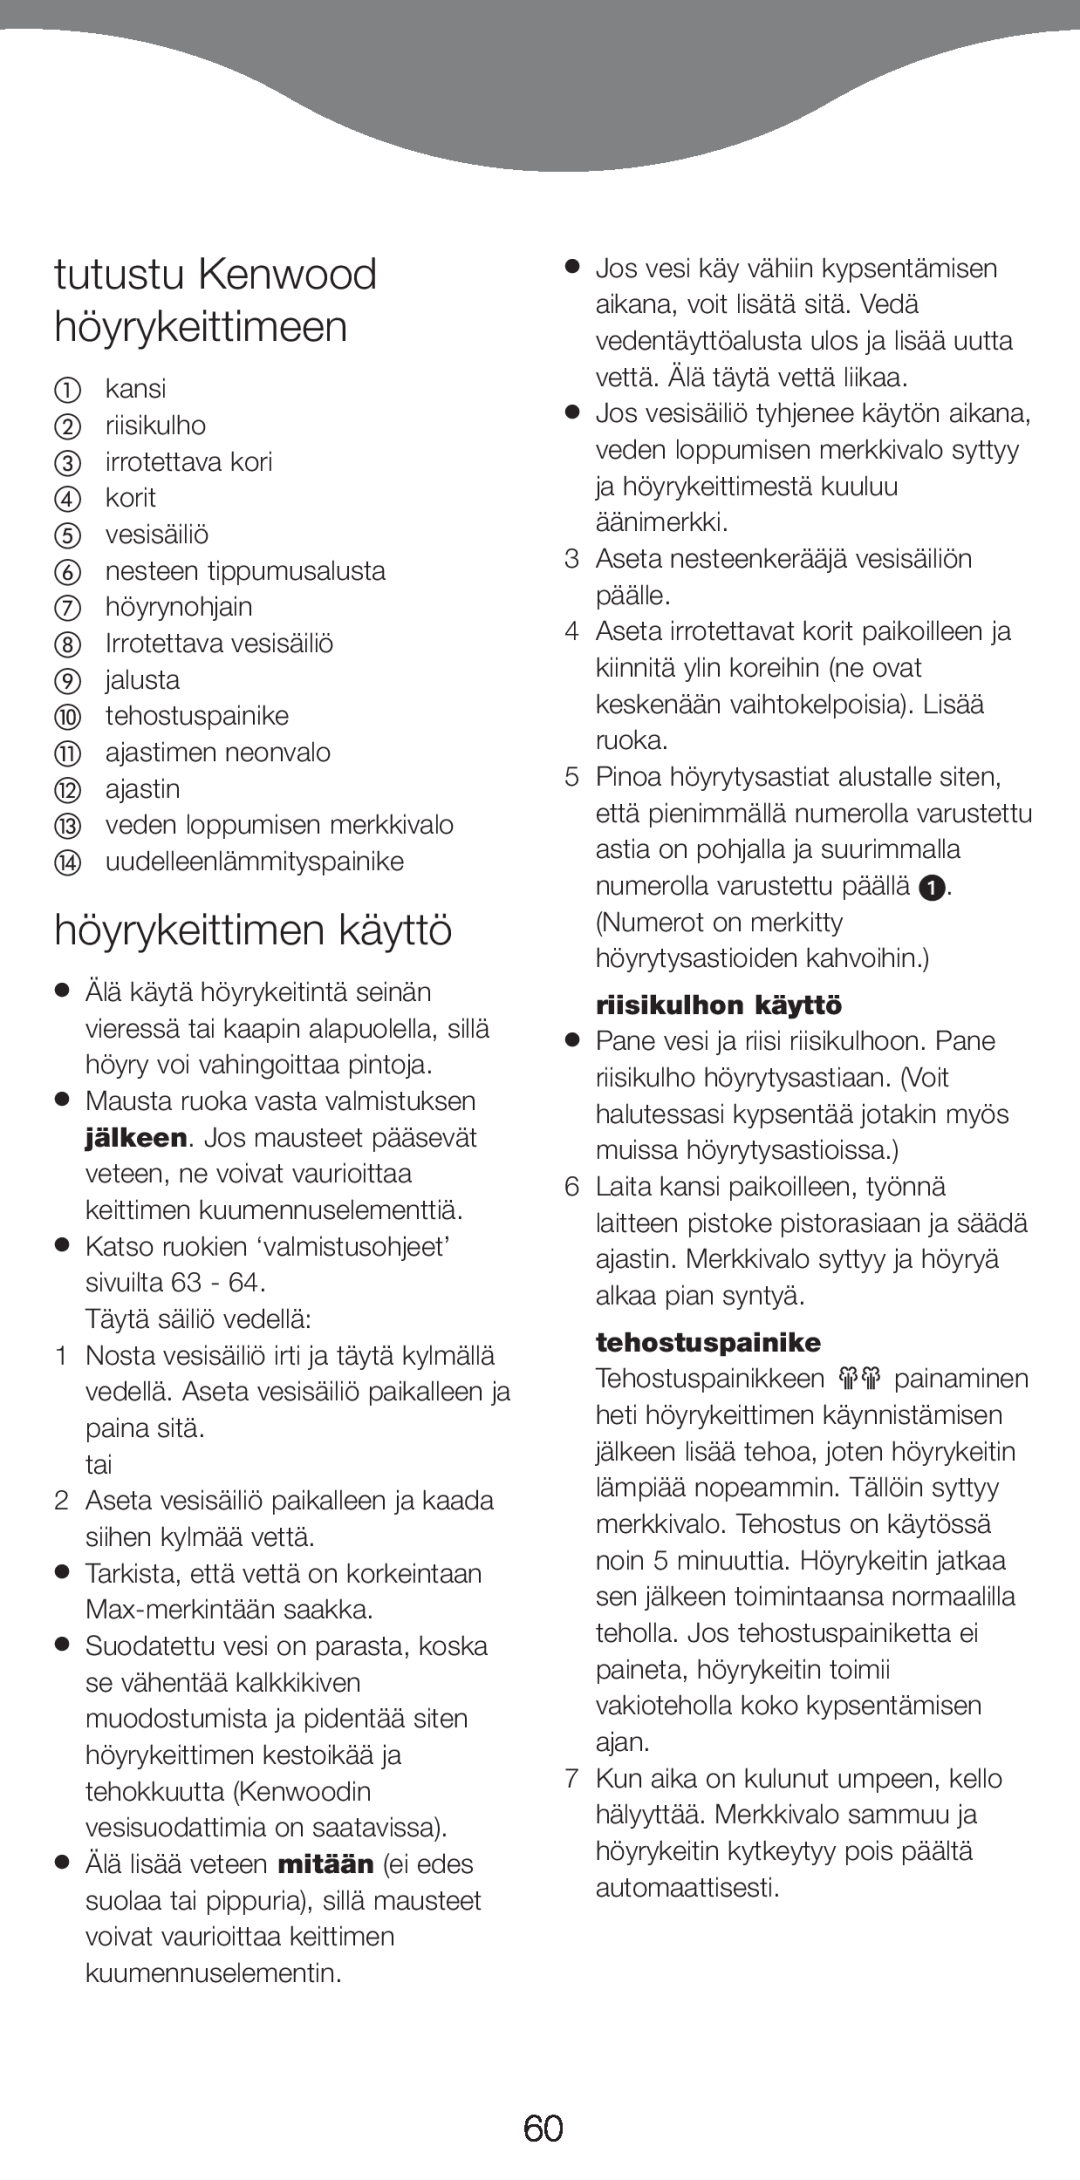 Kenwood FS620 manual tutustu Kenwood höyrykeittimeen, höyrykeittimen käyttö, riisikulhon käyttö, tehostuspainike 